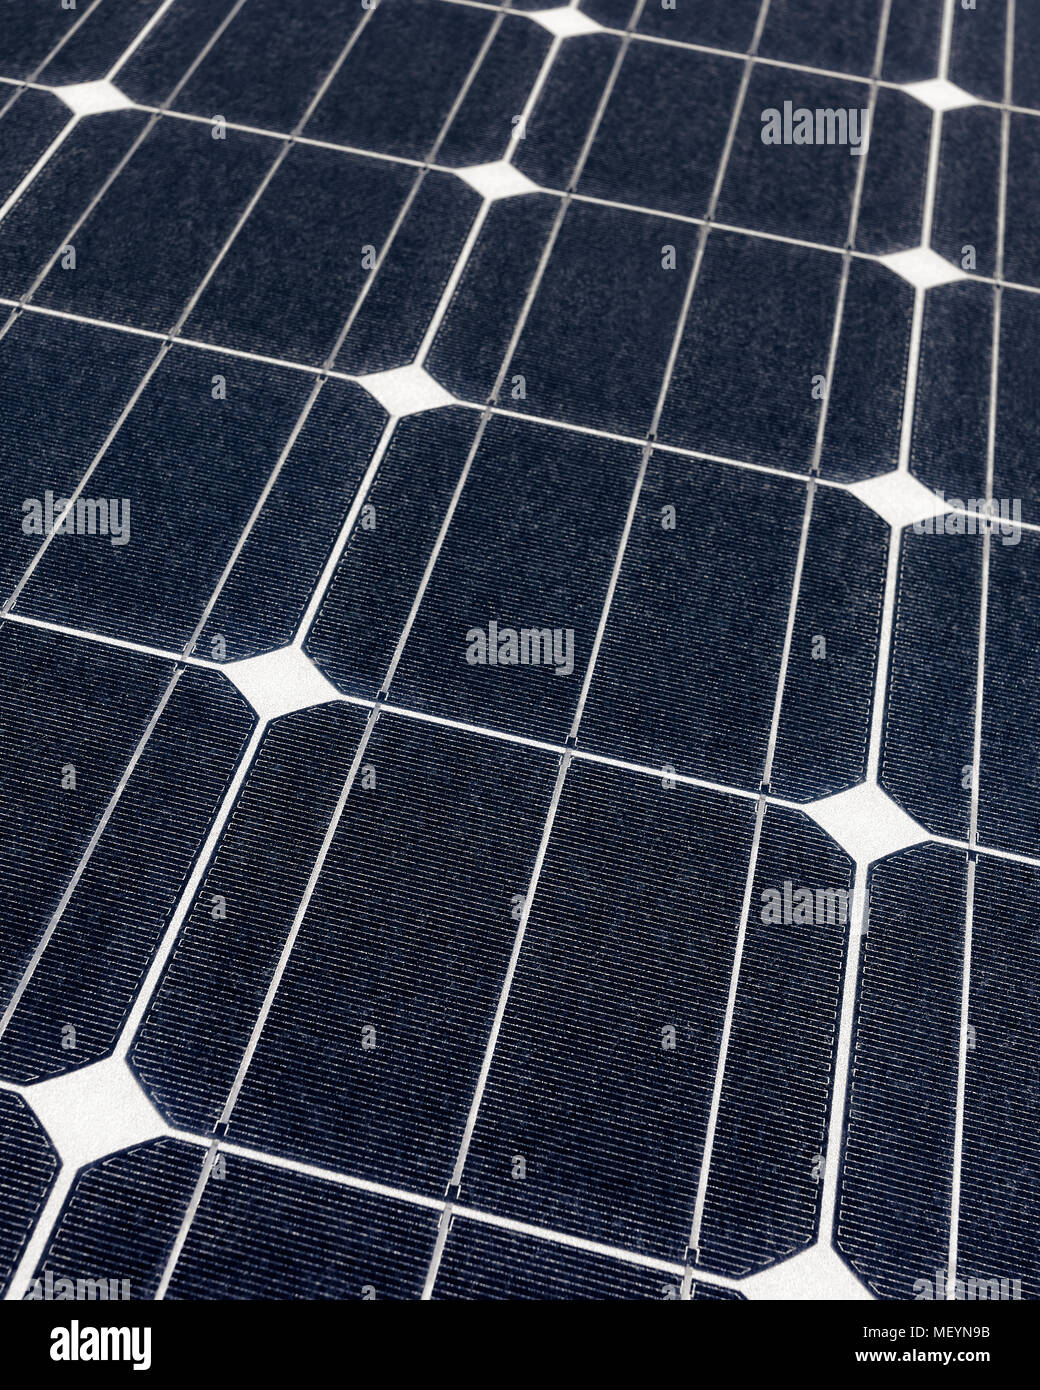 Sonnenkollektoren, Photovoltaik Panel für Strom aus erneuerbaren Energiequellen Stockfoto